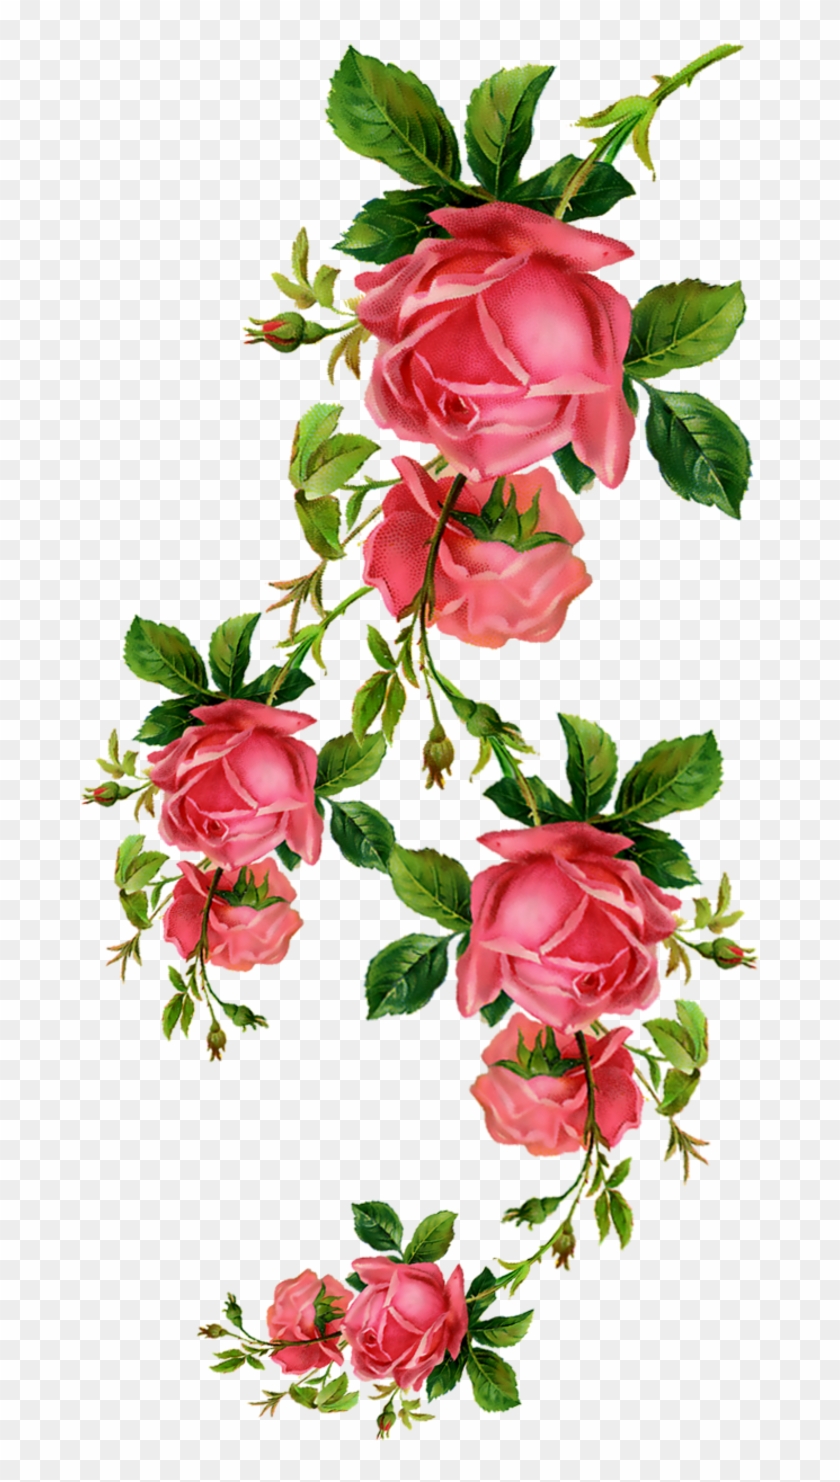 Flower Rose Blume Clip Art Flower Rose Blume Clip Art Free Transparent Png Clipart Images Download